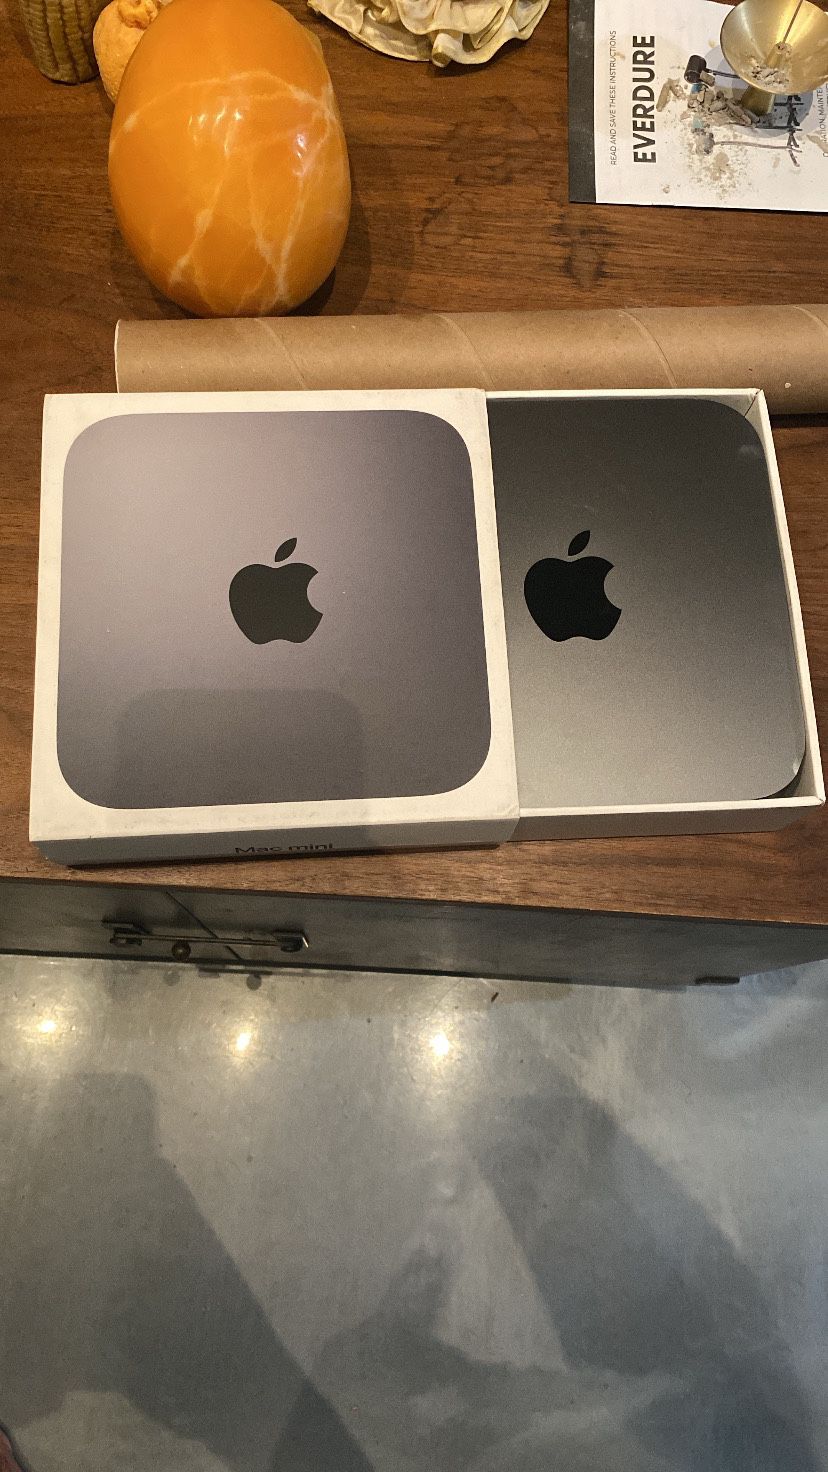 Apple Mac mini 